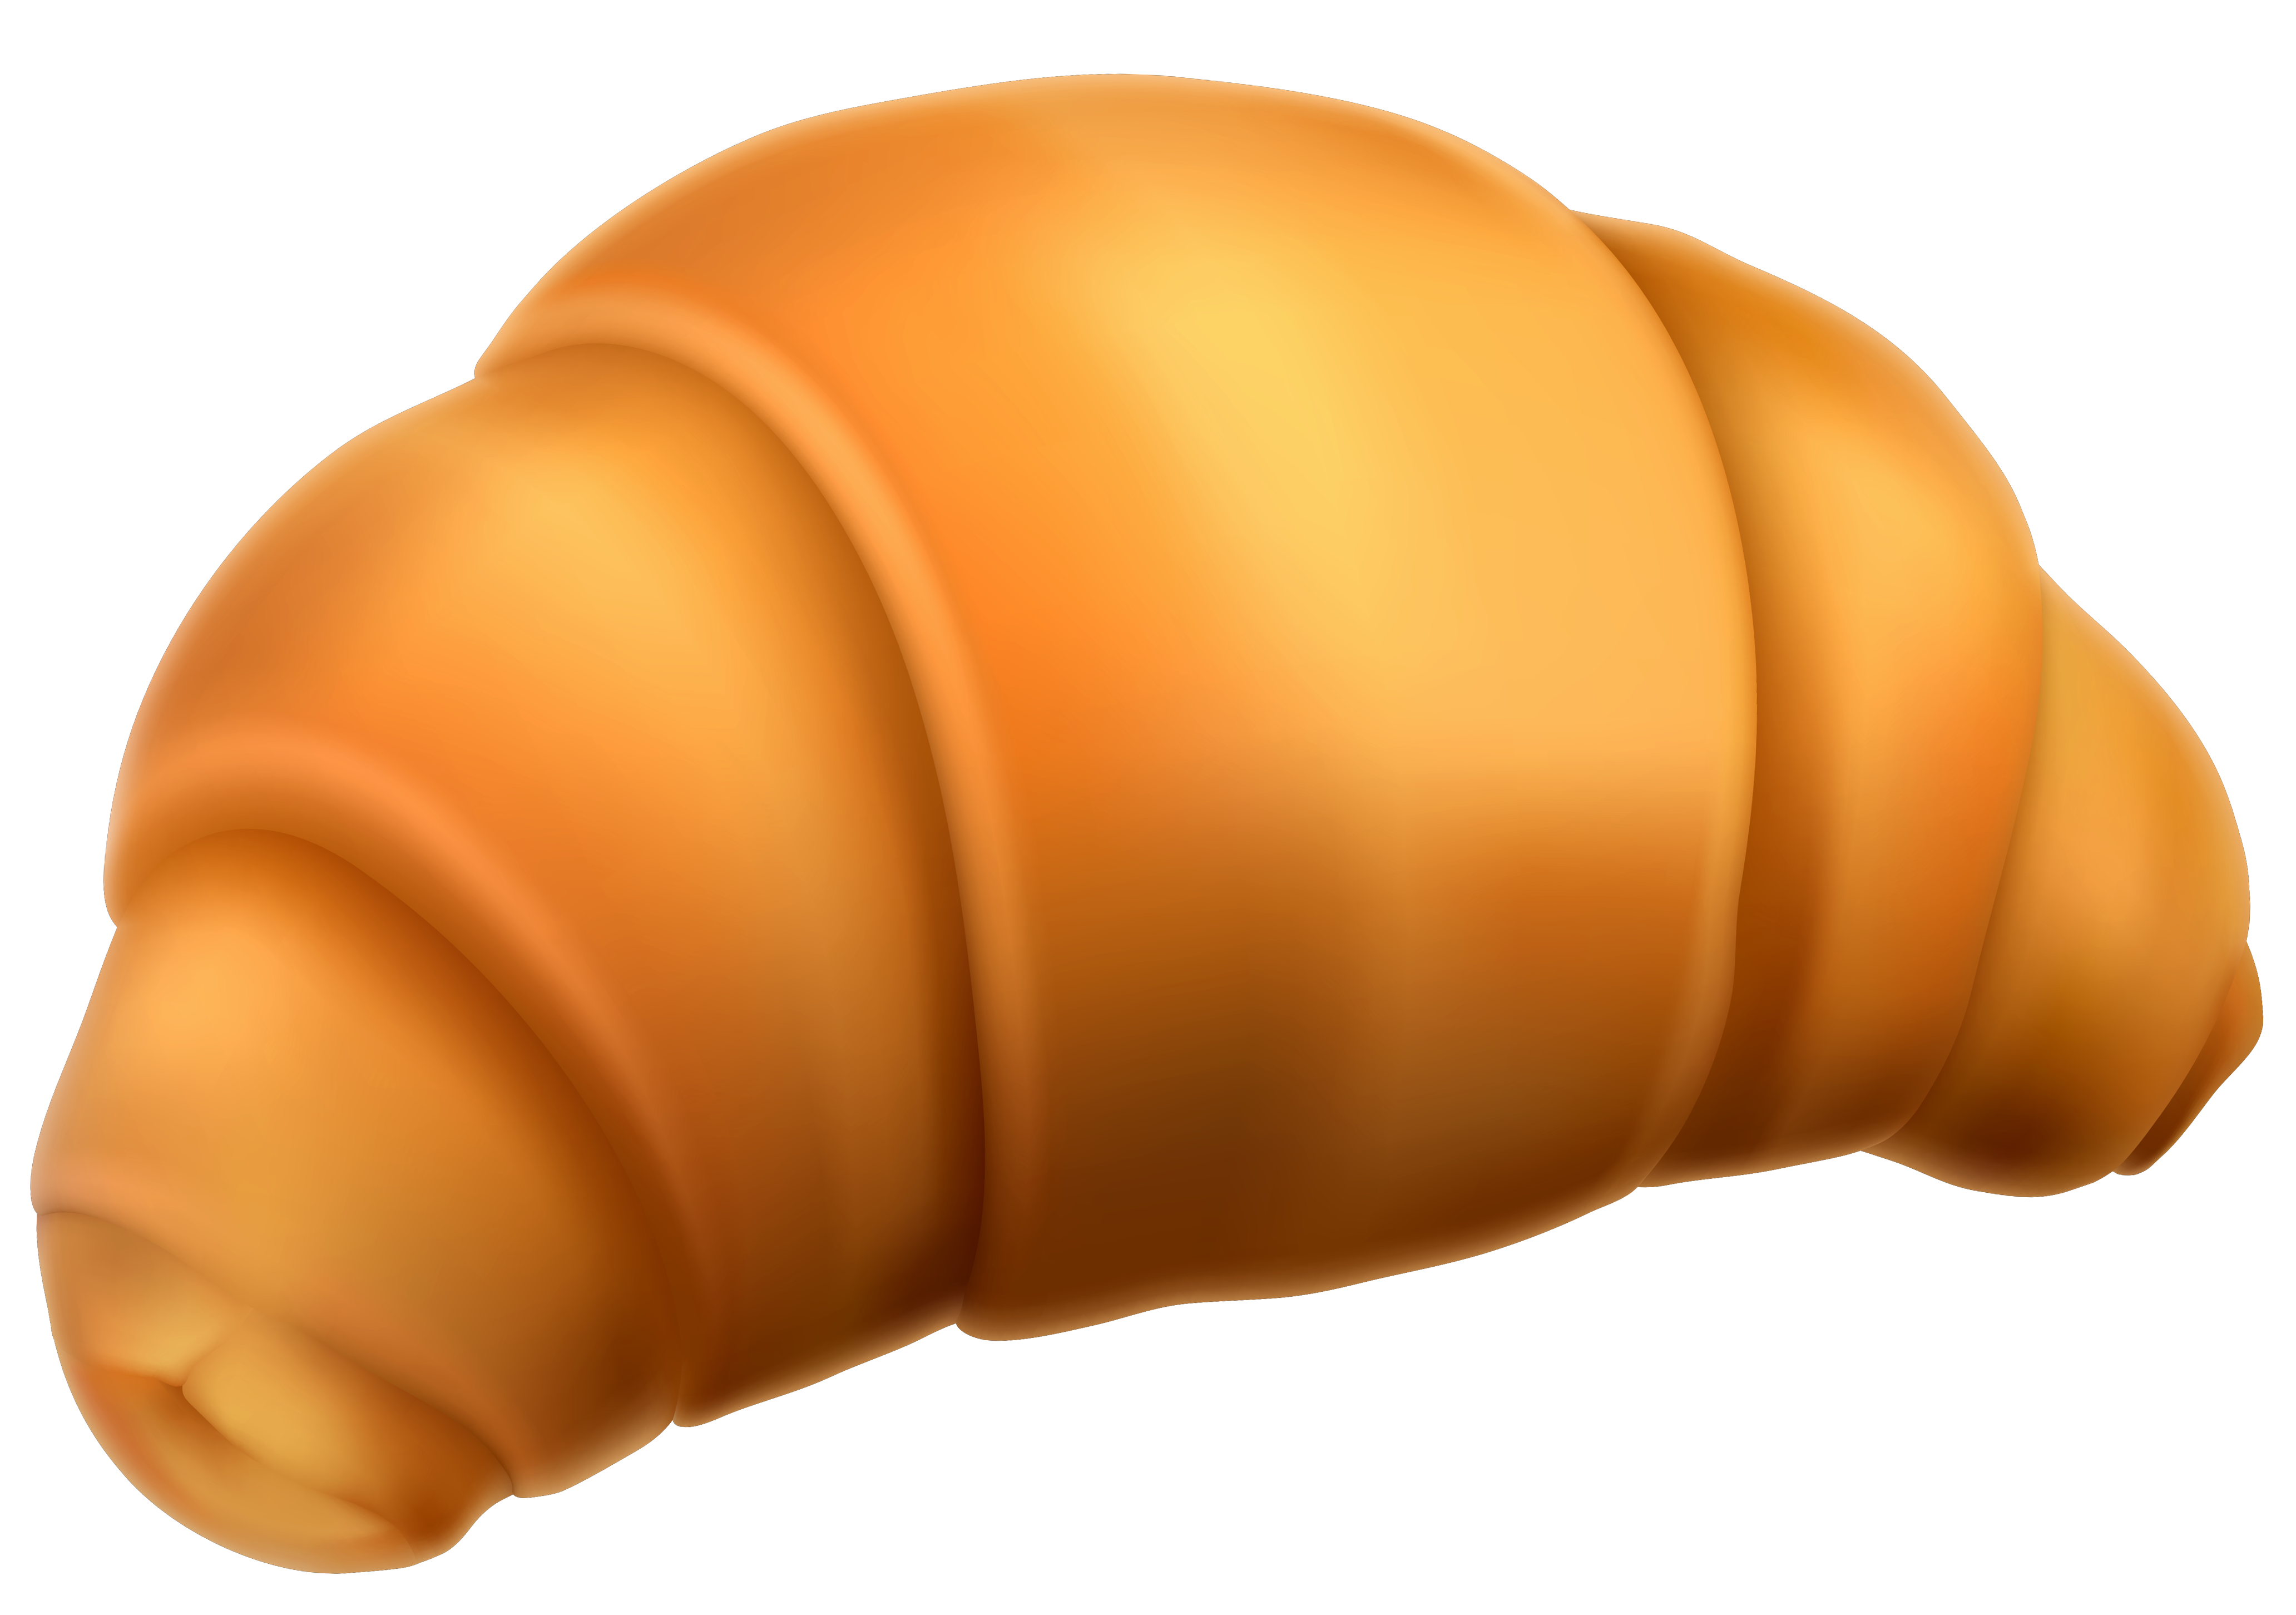 Croissant PNG Clipart Picture